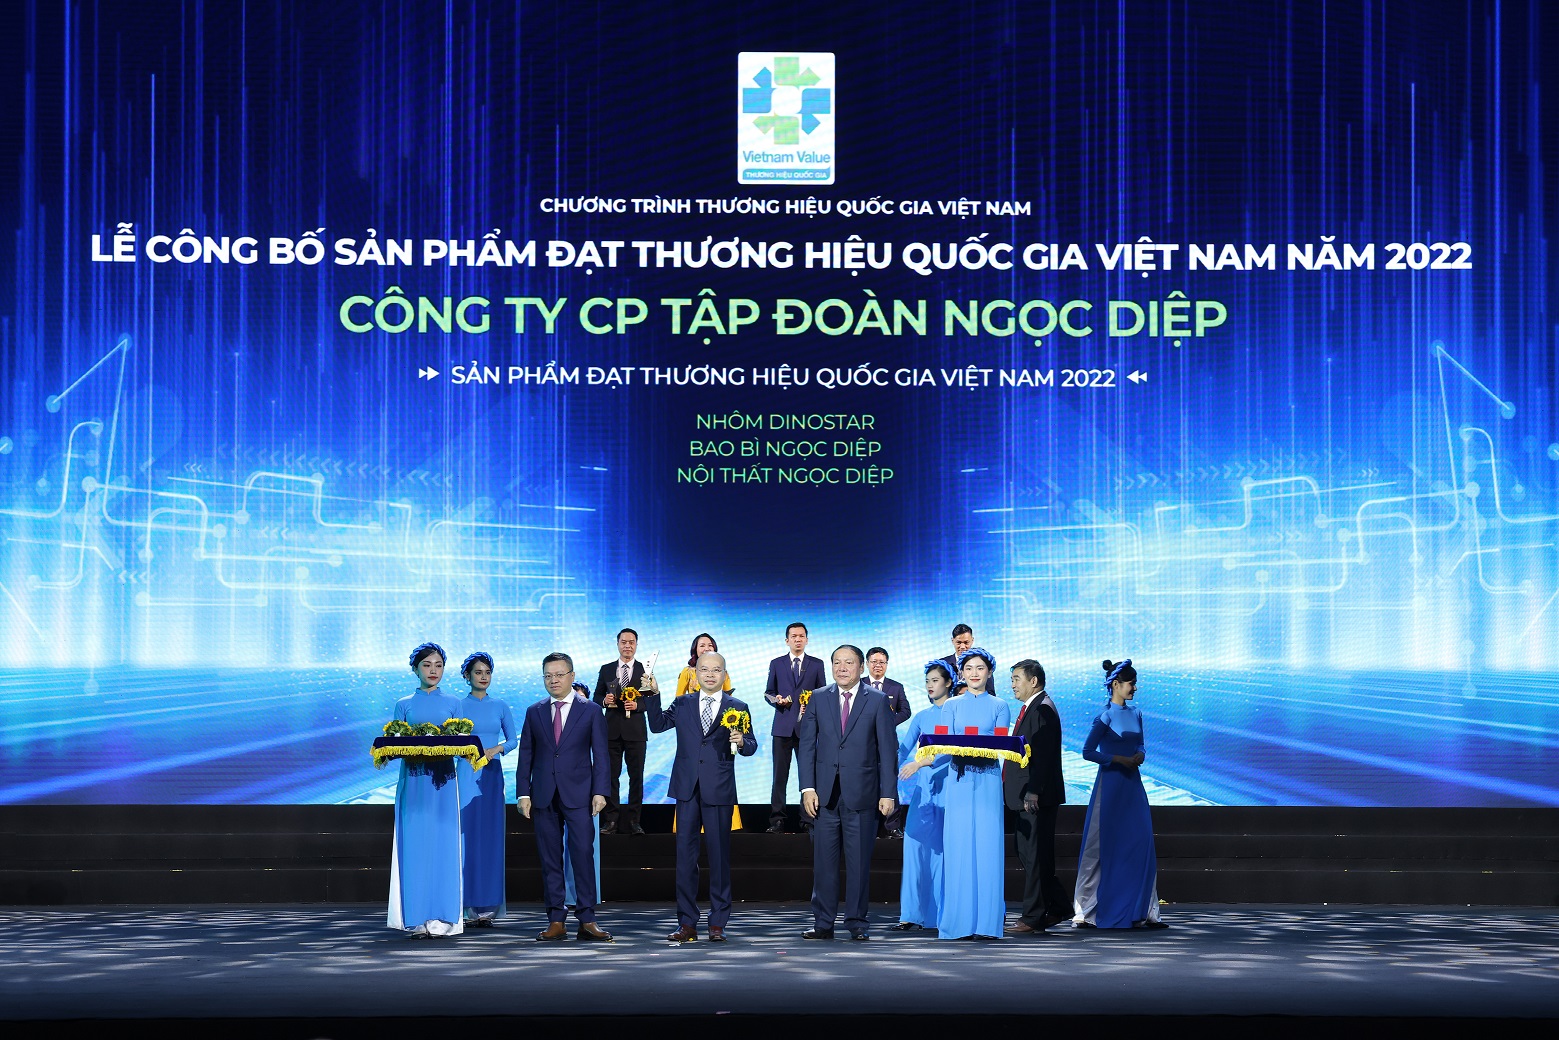 Tập đoàn Ngọc Diệp nhận vinh danh Thương hiệu Quốc gia Việt Nam 2022